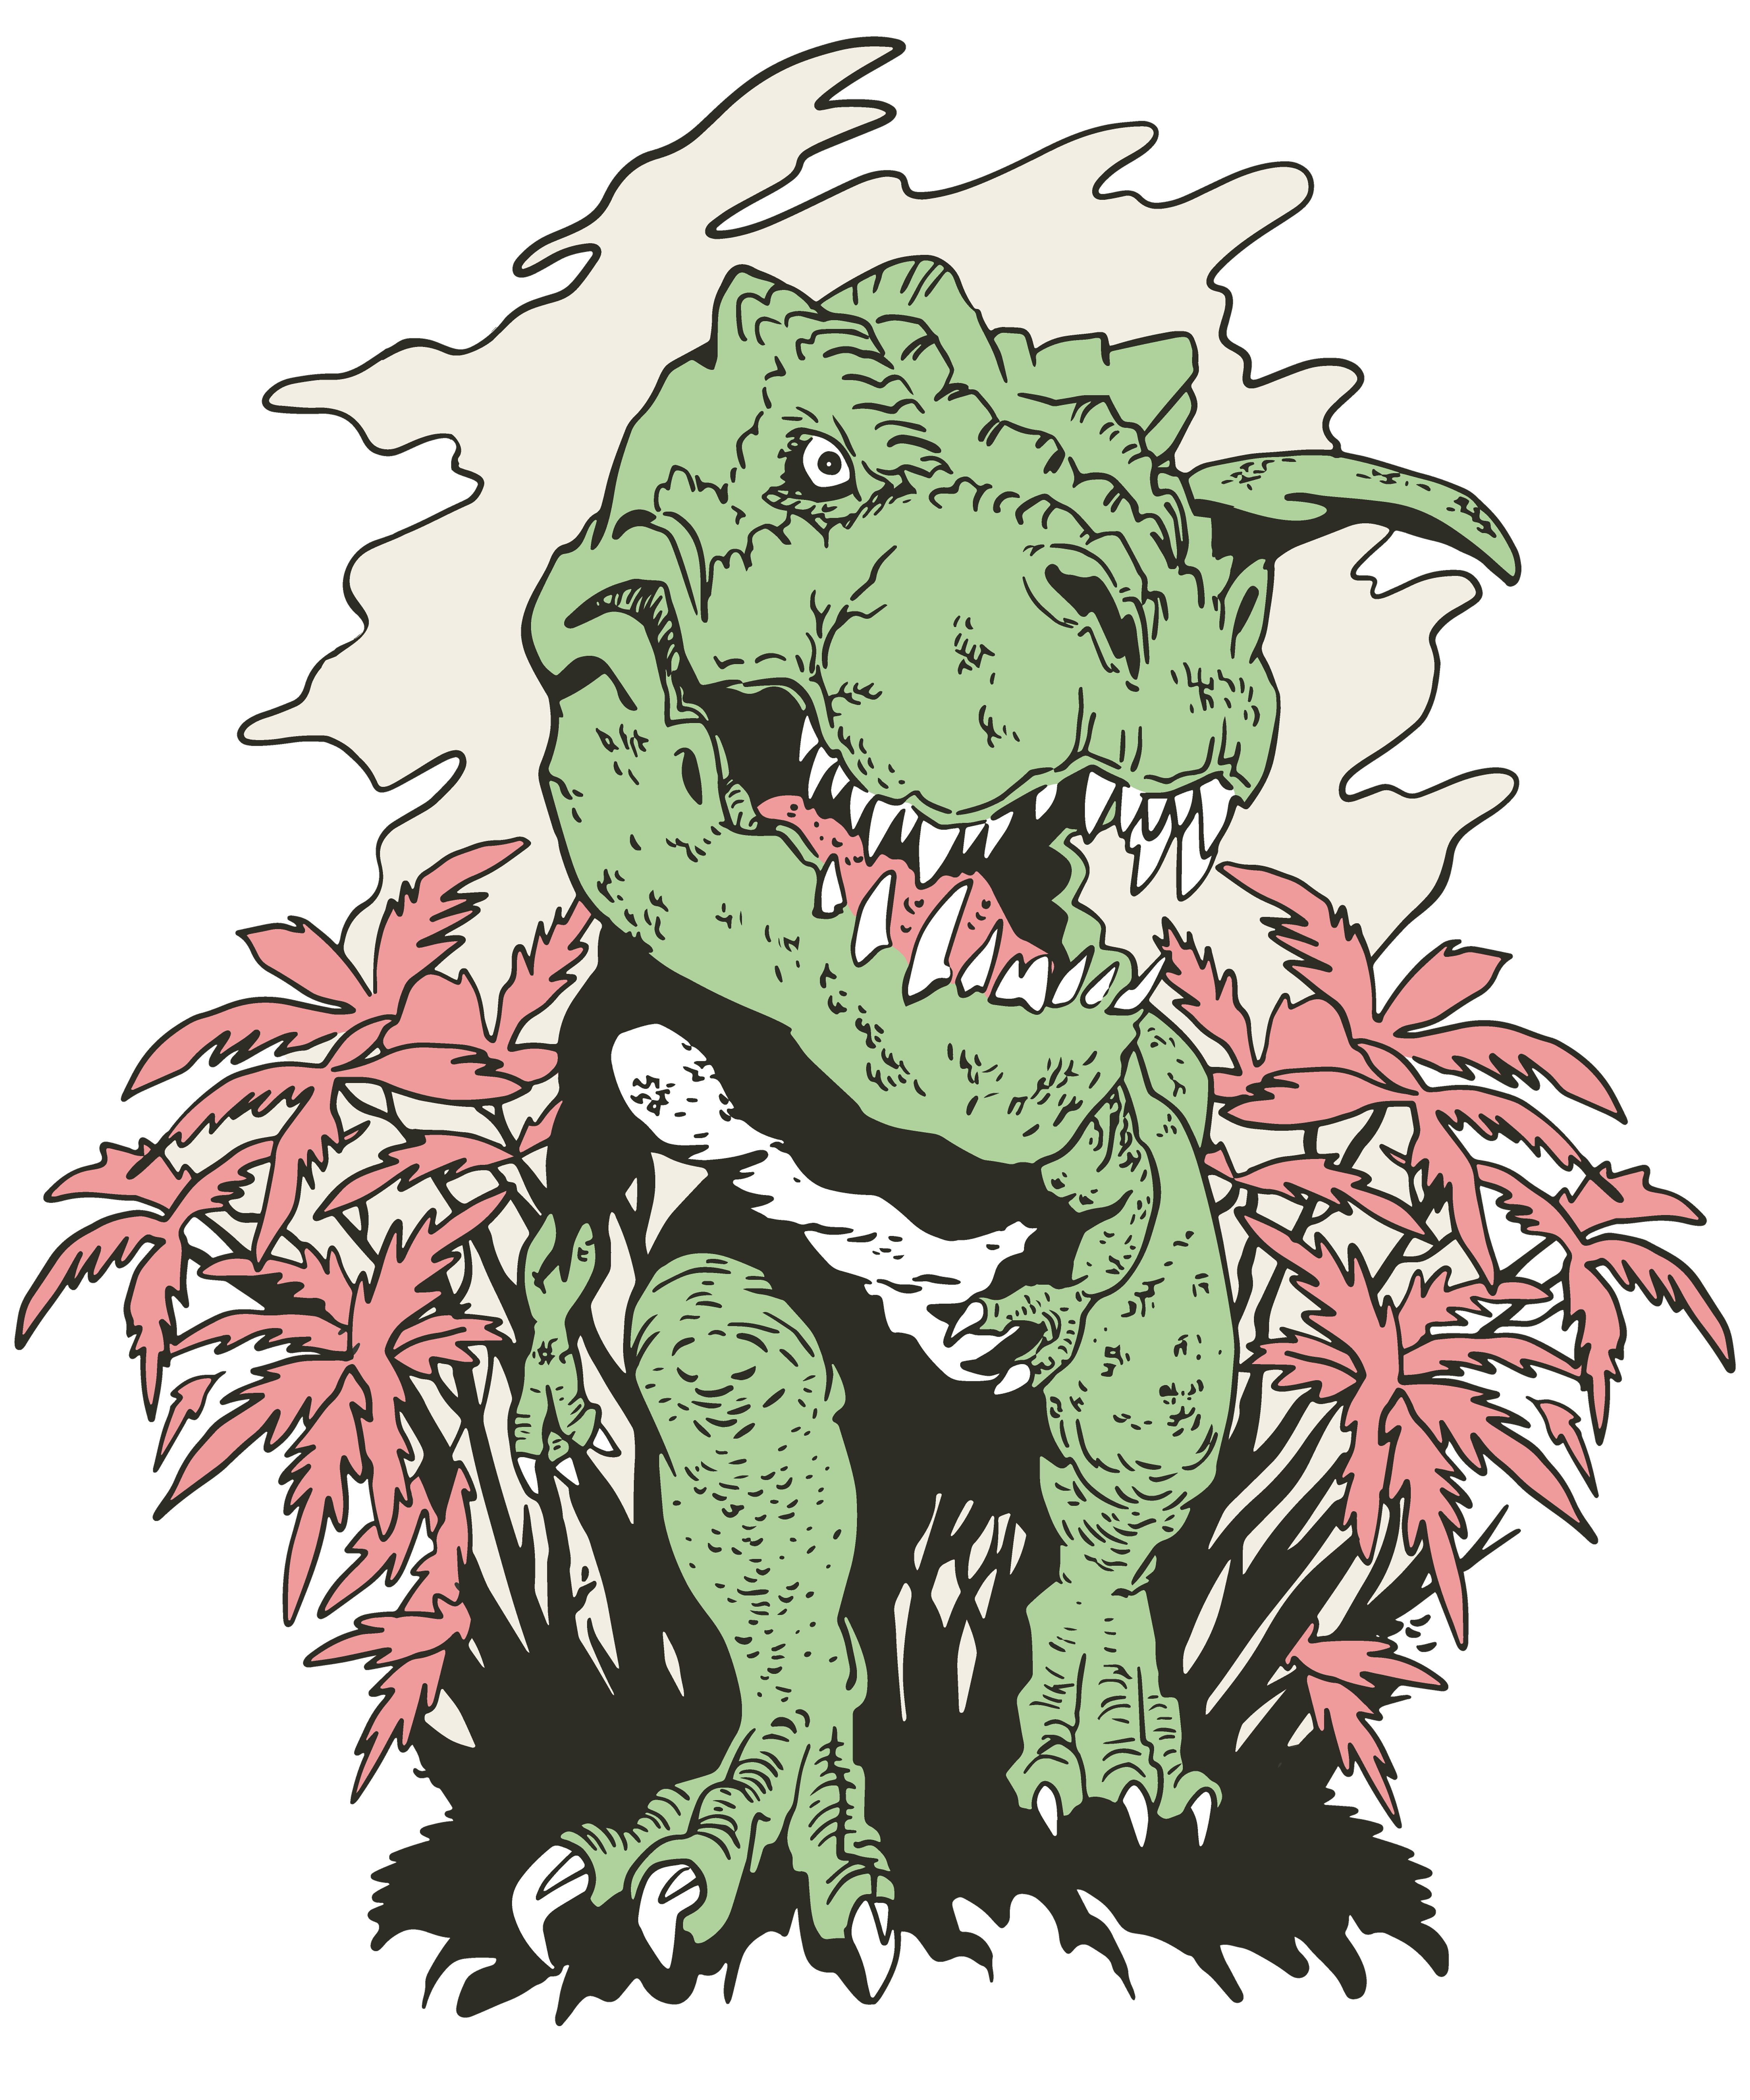 blau, kommt Baumwolle aus i101 MyDesign24 T-Shirt Kinder der Dino bedrucktes weiß, mit 100% rot, schwarz, Print-Shirt einem Aufdruck, Busch T-Rex